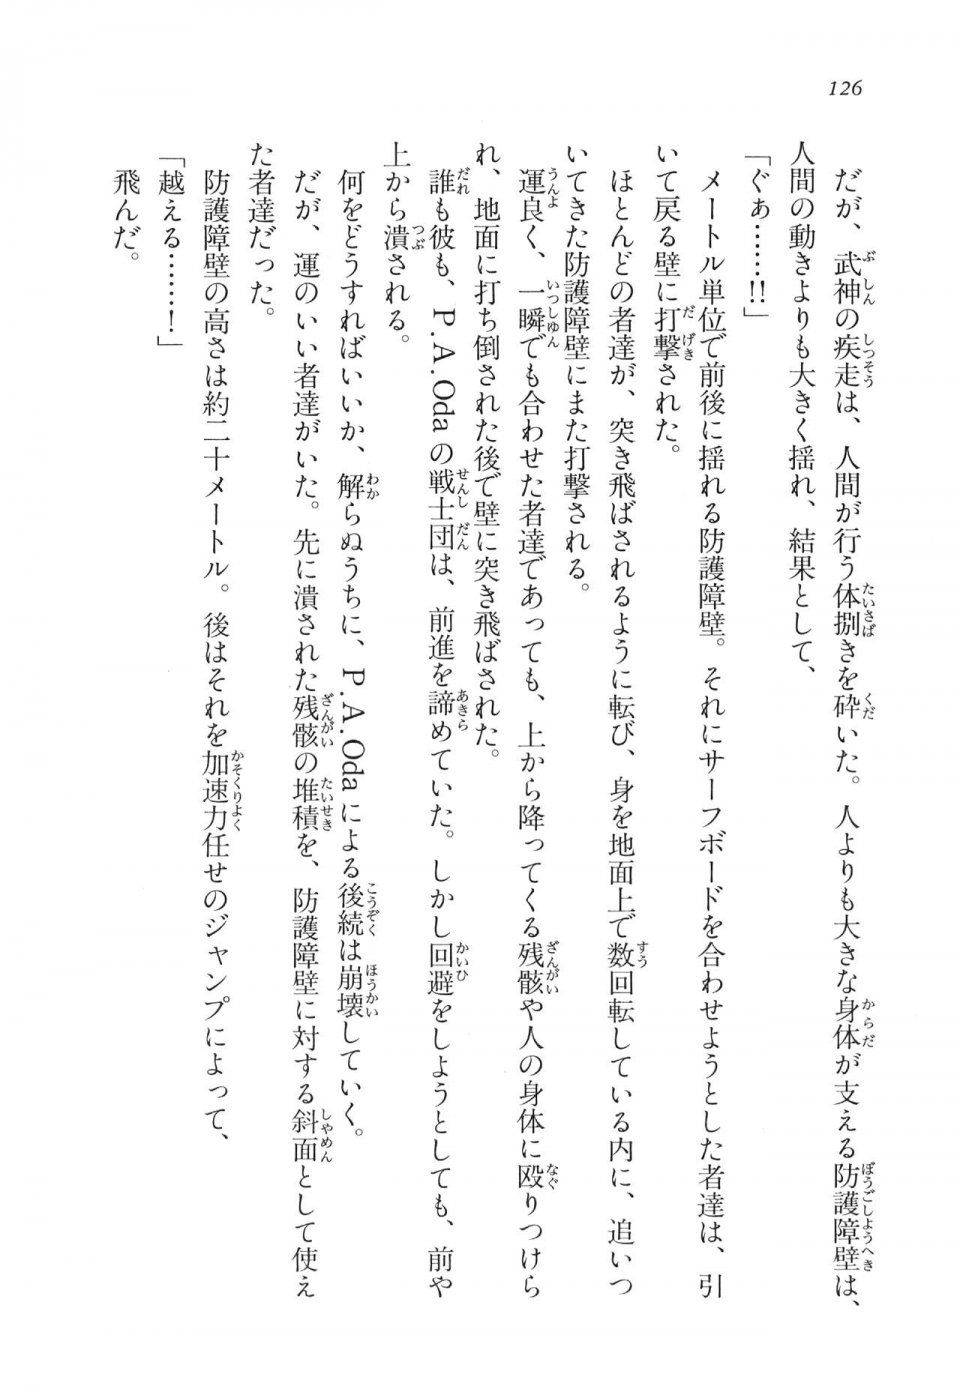 Kyoukai Senjou no Horizon LN Vol 11(5A) - Photo #126